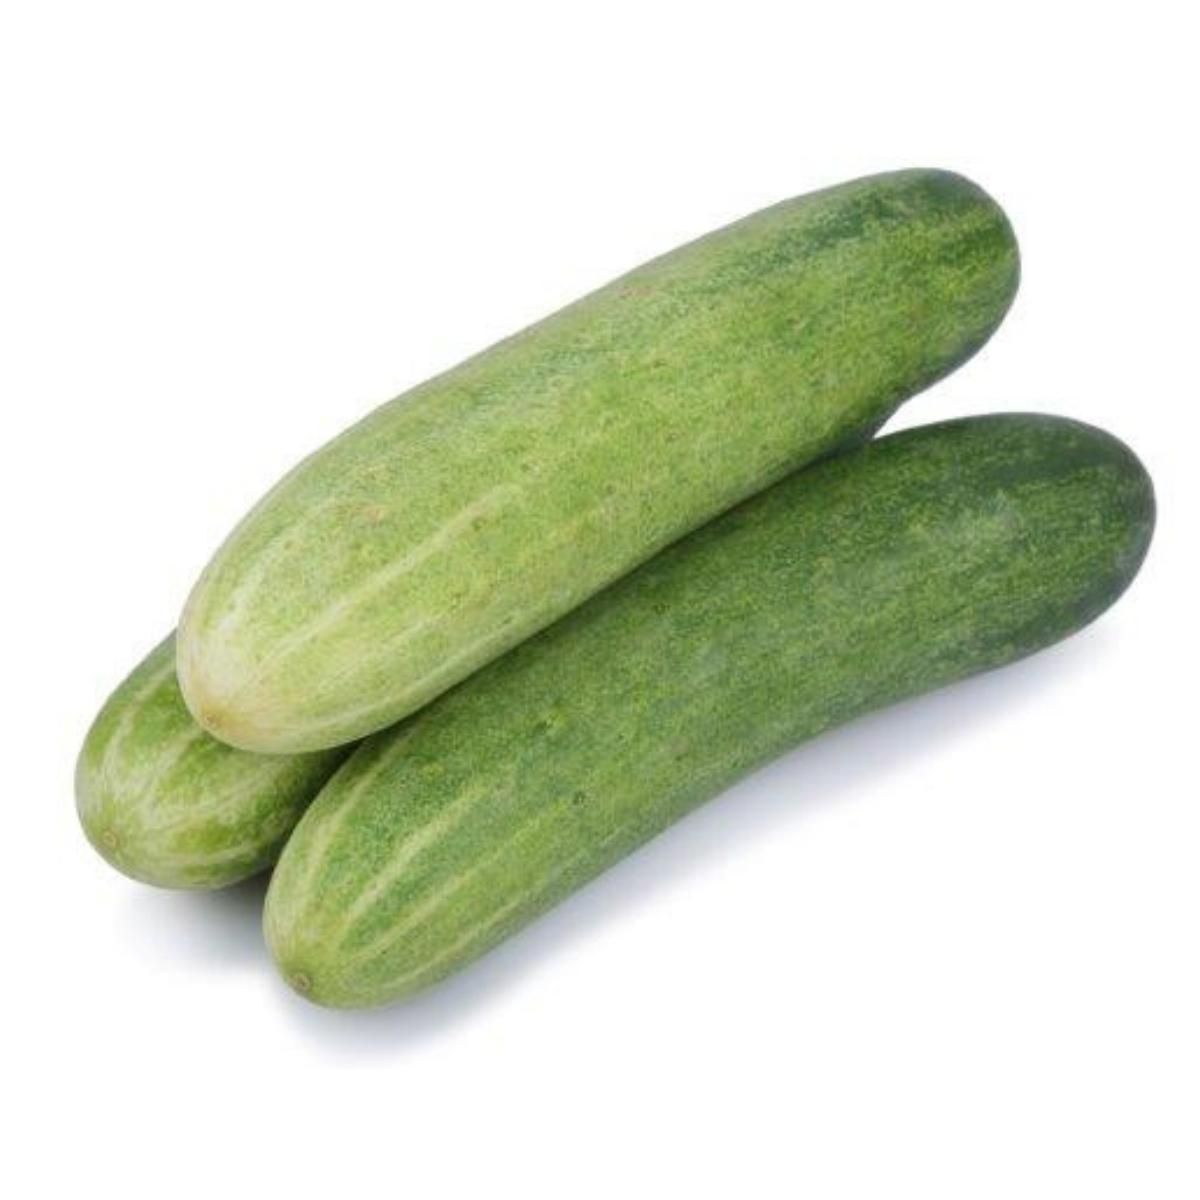 cucumber_green.jpg